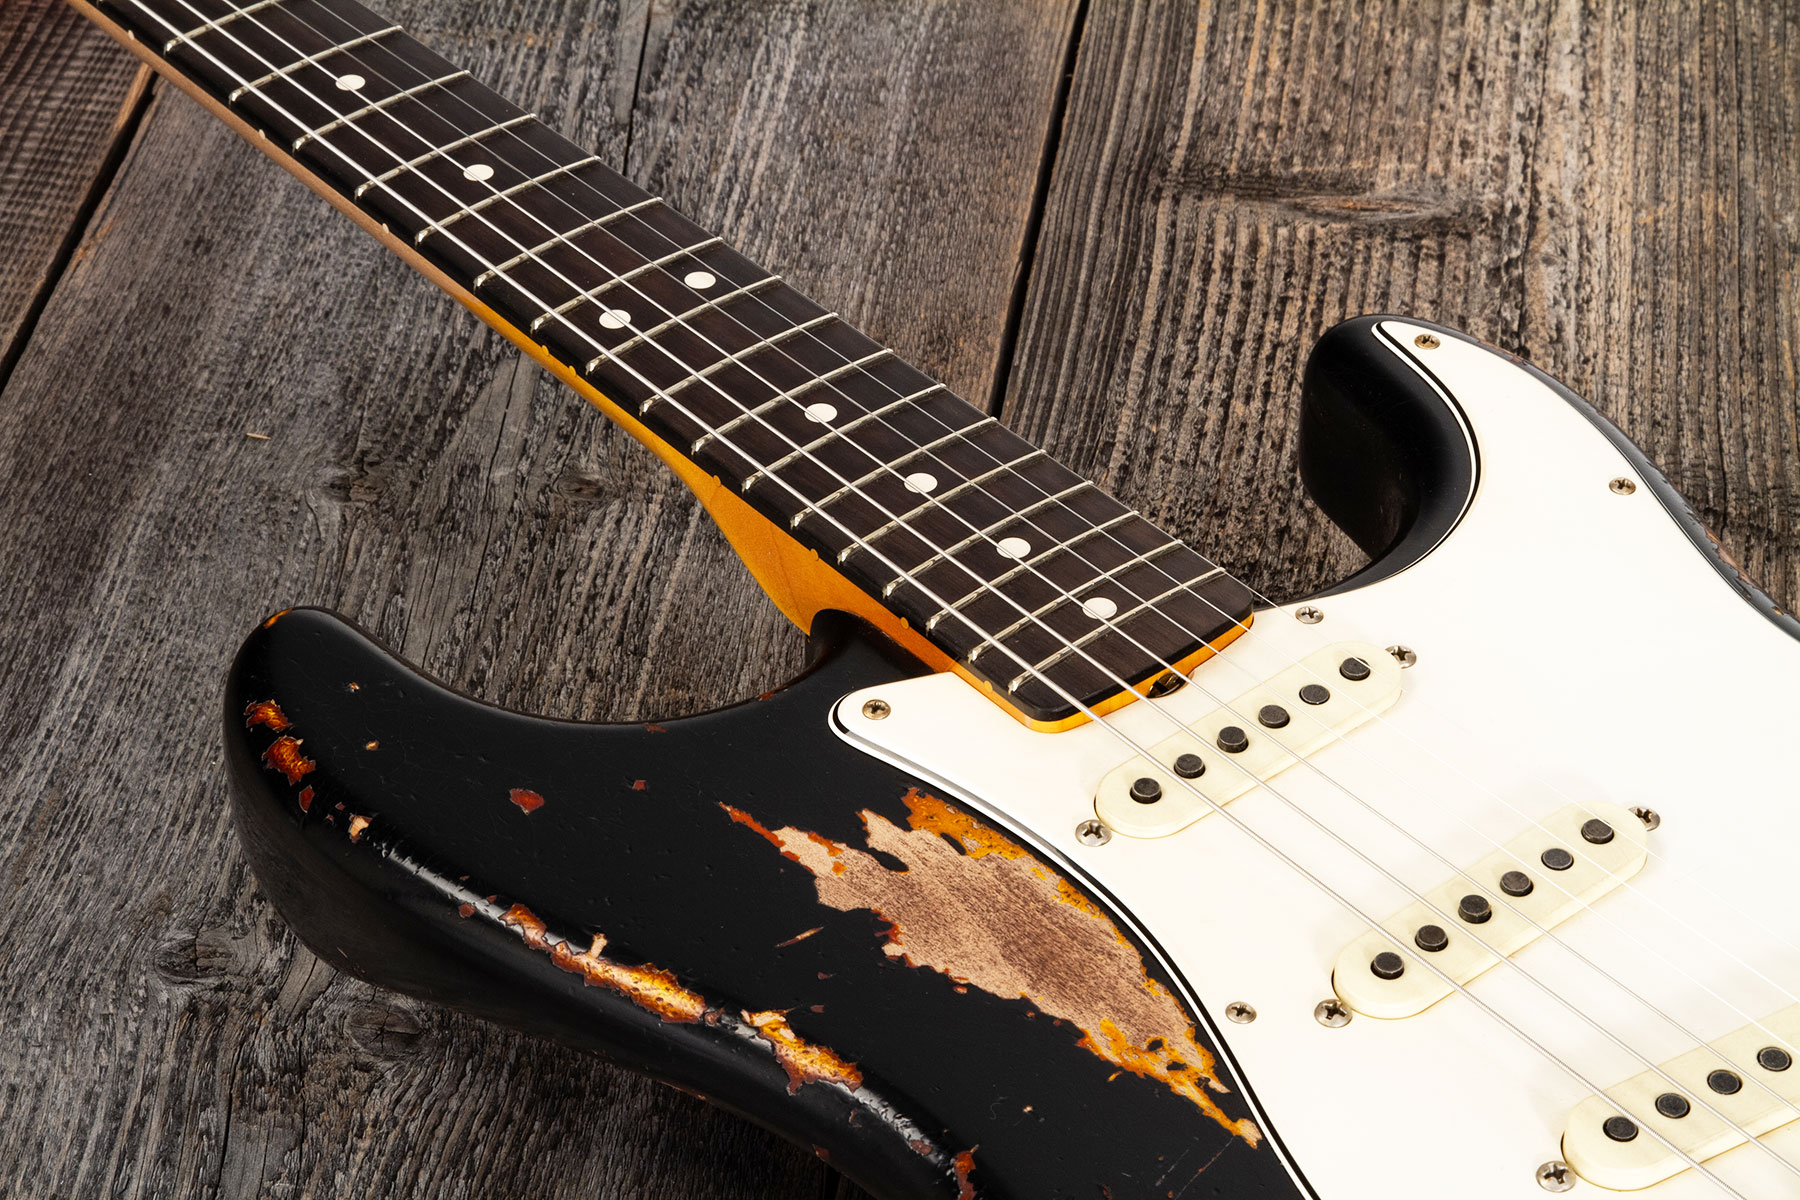 Fender Custom Shop Strat 1963 Masterbuilt K.mcmillin 3s Trem Rw #r127357 - Heavy Relic Black Ov. 3-color Sunburst - Elektrische gitaar in Str-vorm - V